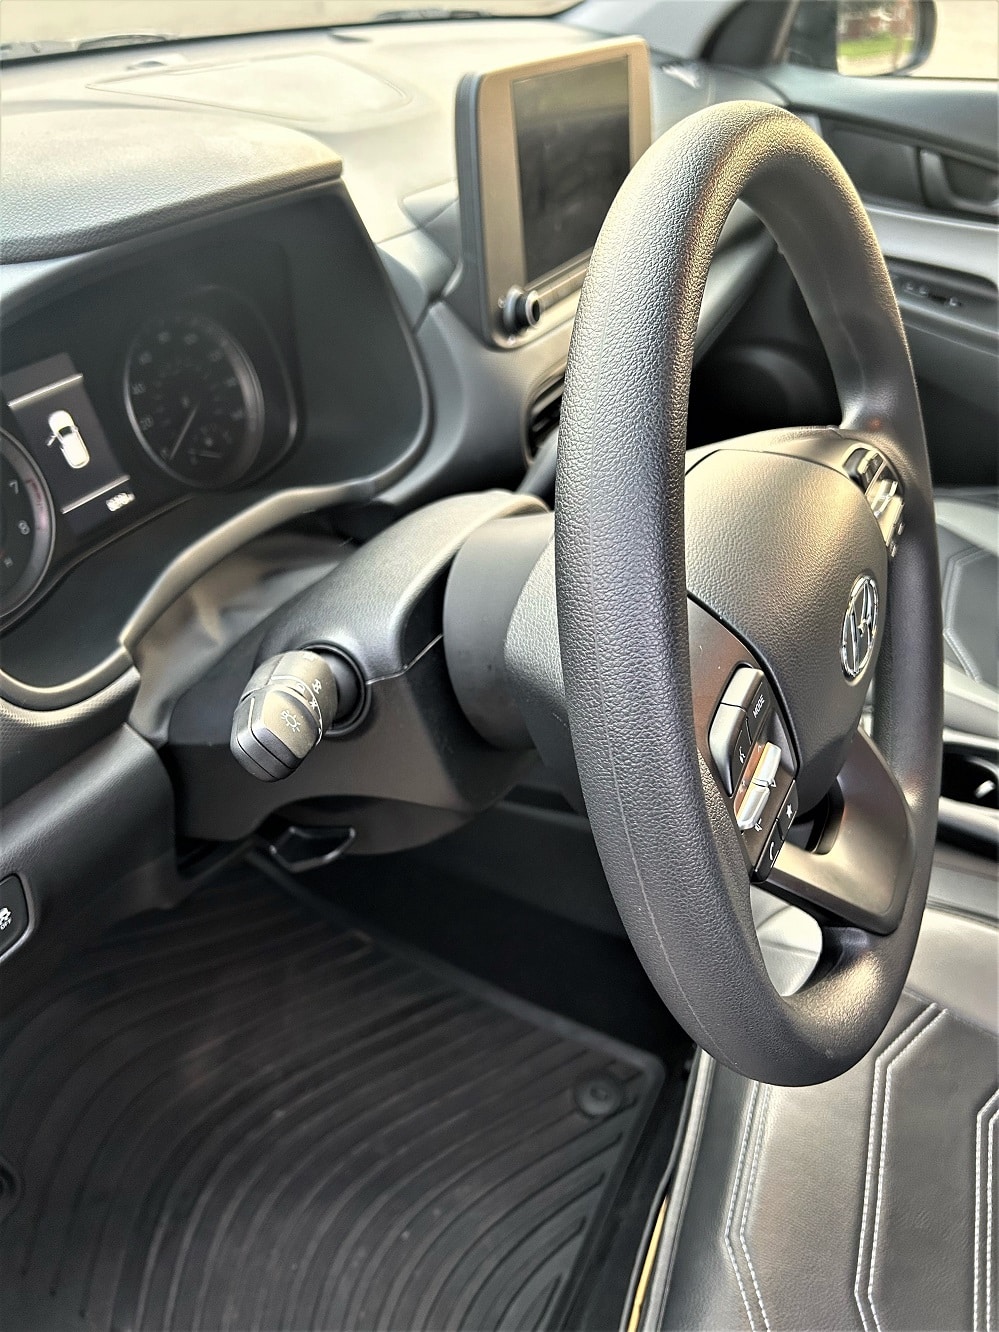 Spacershop.com Steering wheel spacer for Hyundai Kona installed